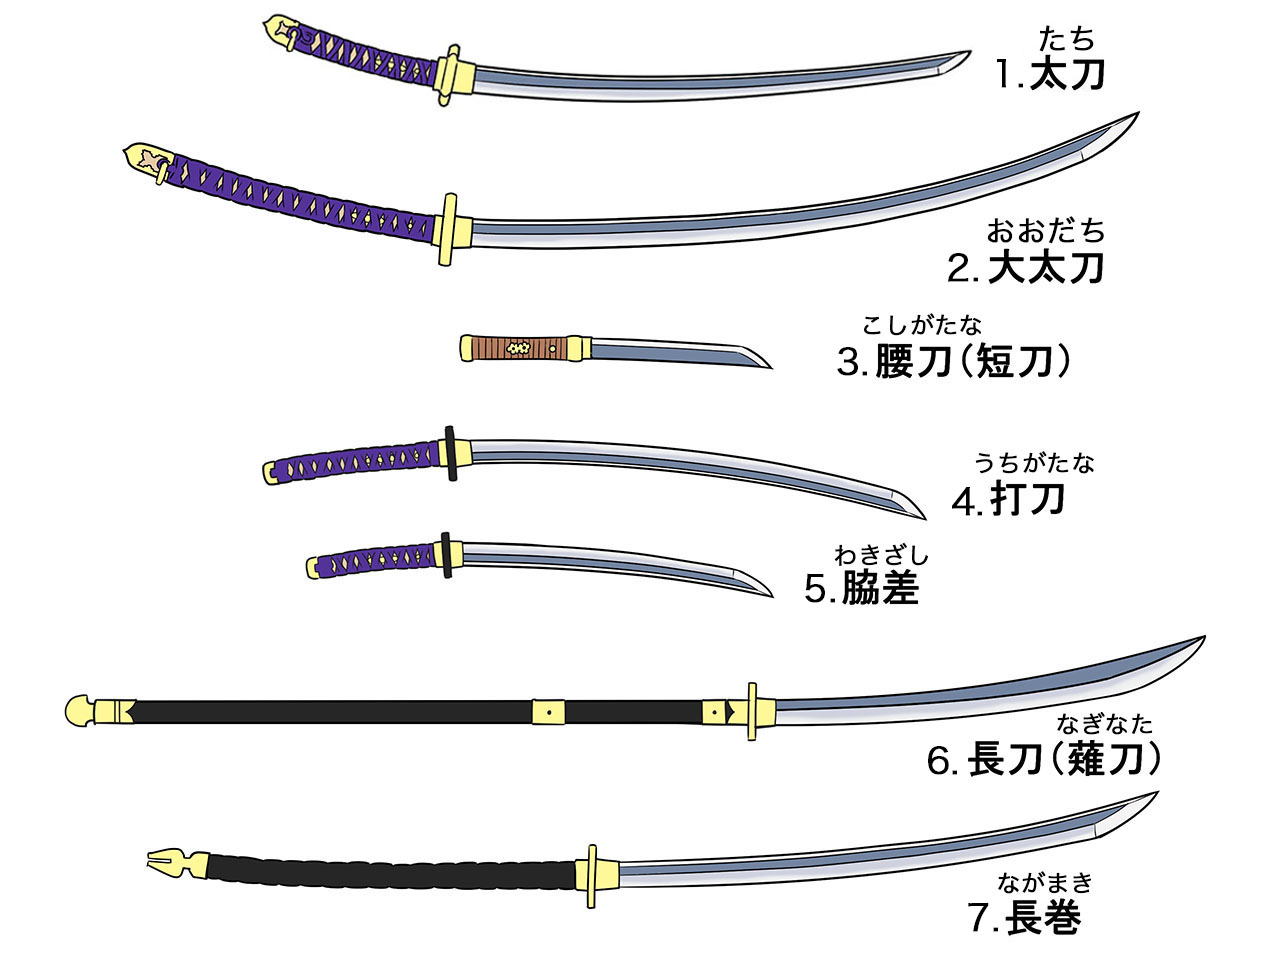 作画資料 日本刀の種類や構造 描き方 イラスト マンガ描き方ナビ